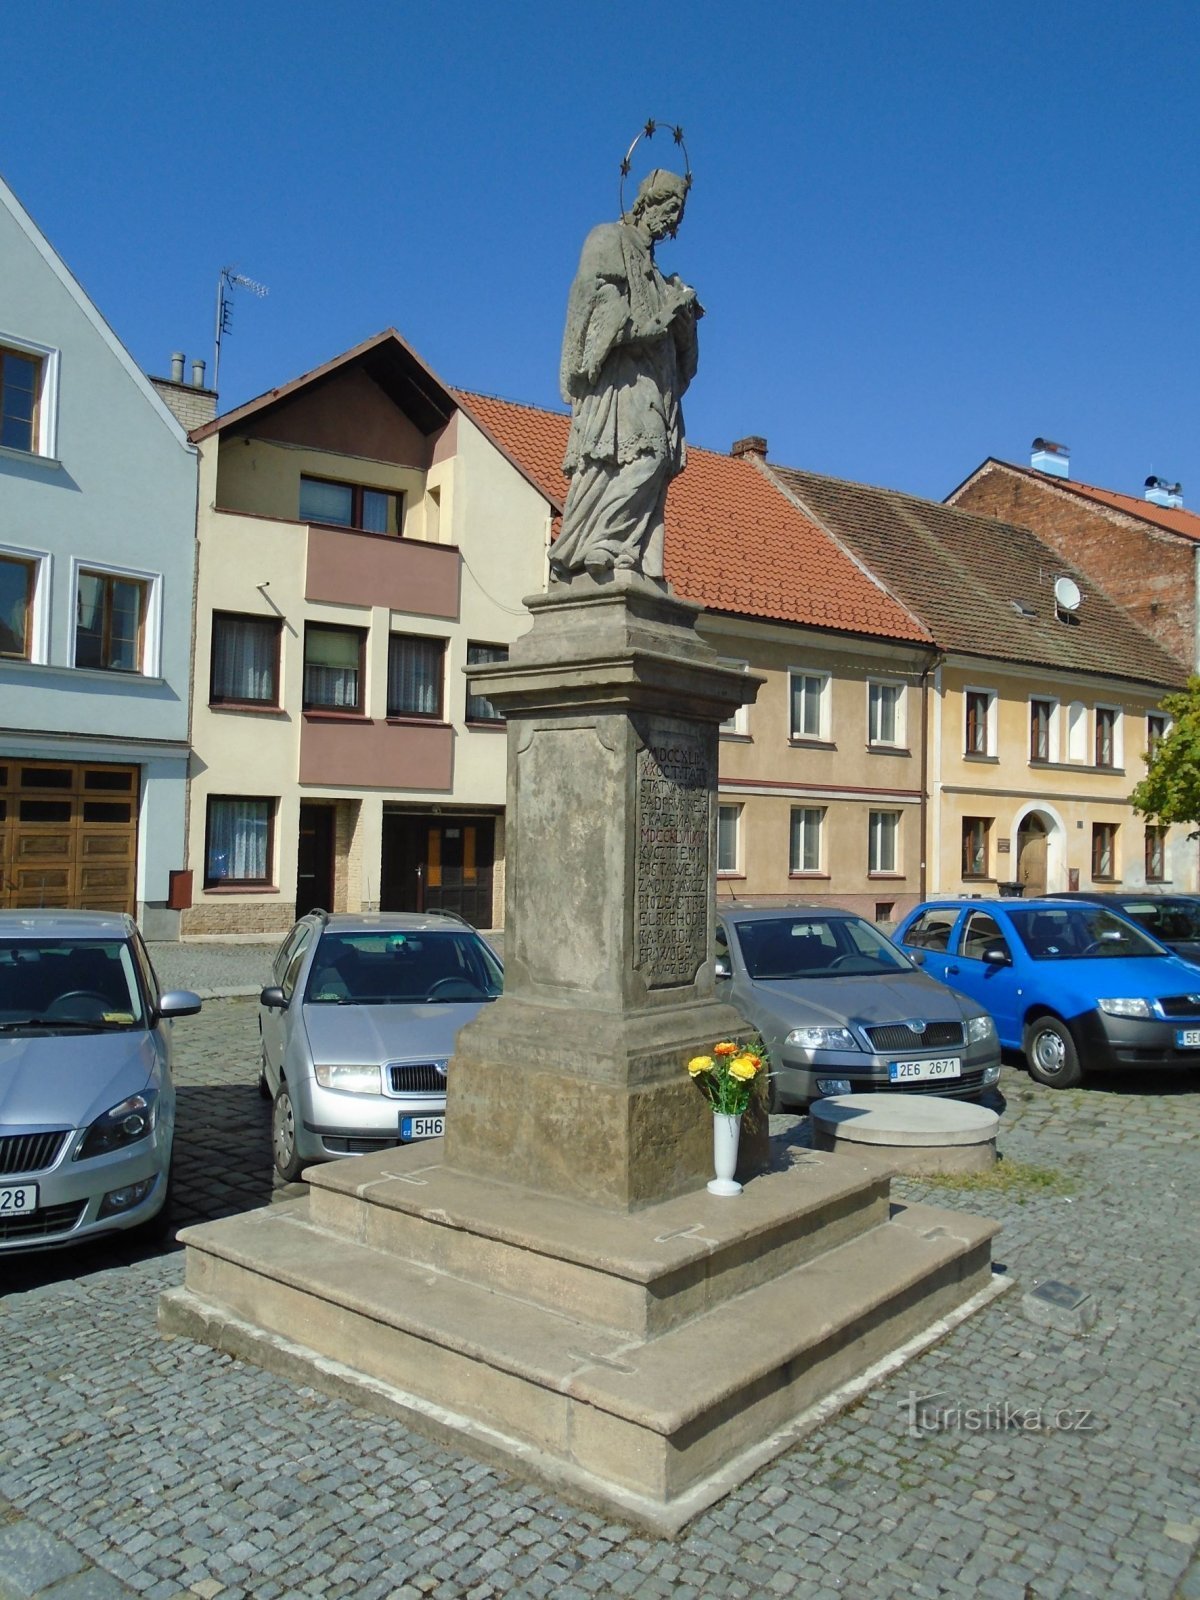 Statue de St. Jean Nepomuck sur Bělobranské náměstí (Pardubice, 18.4.2018 avril XNUMX)